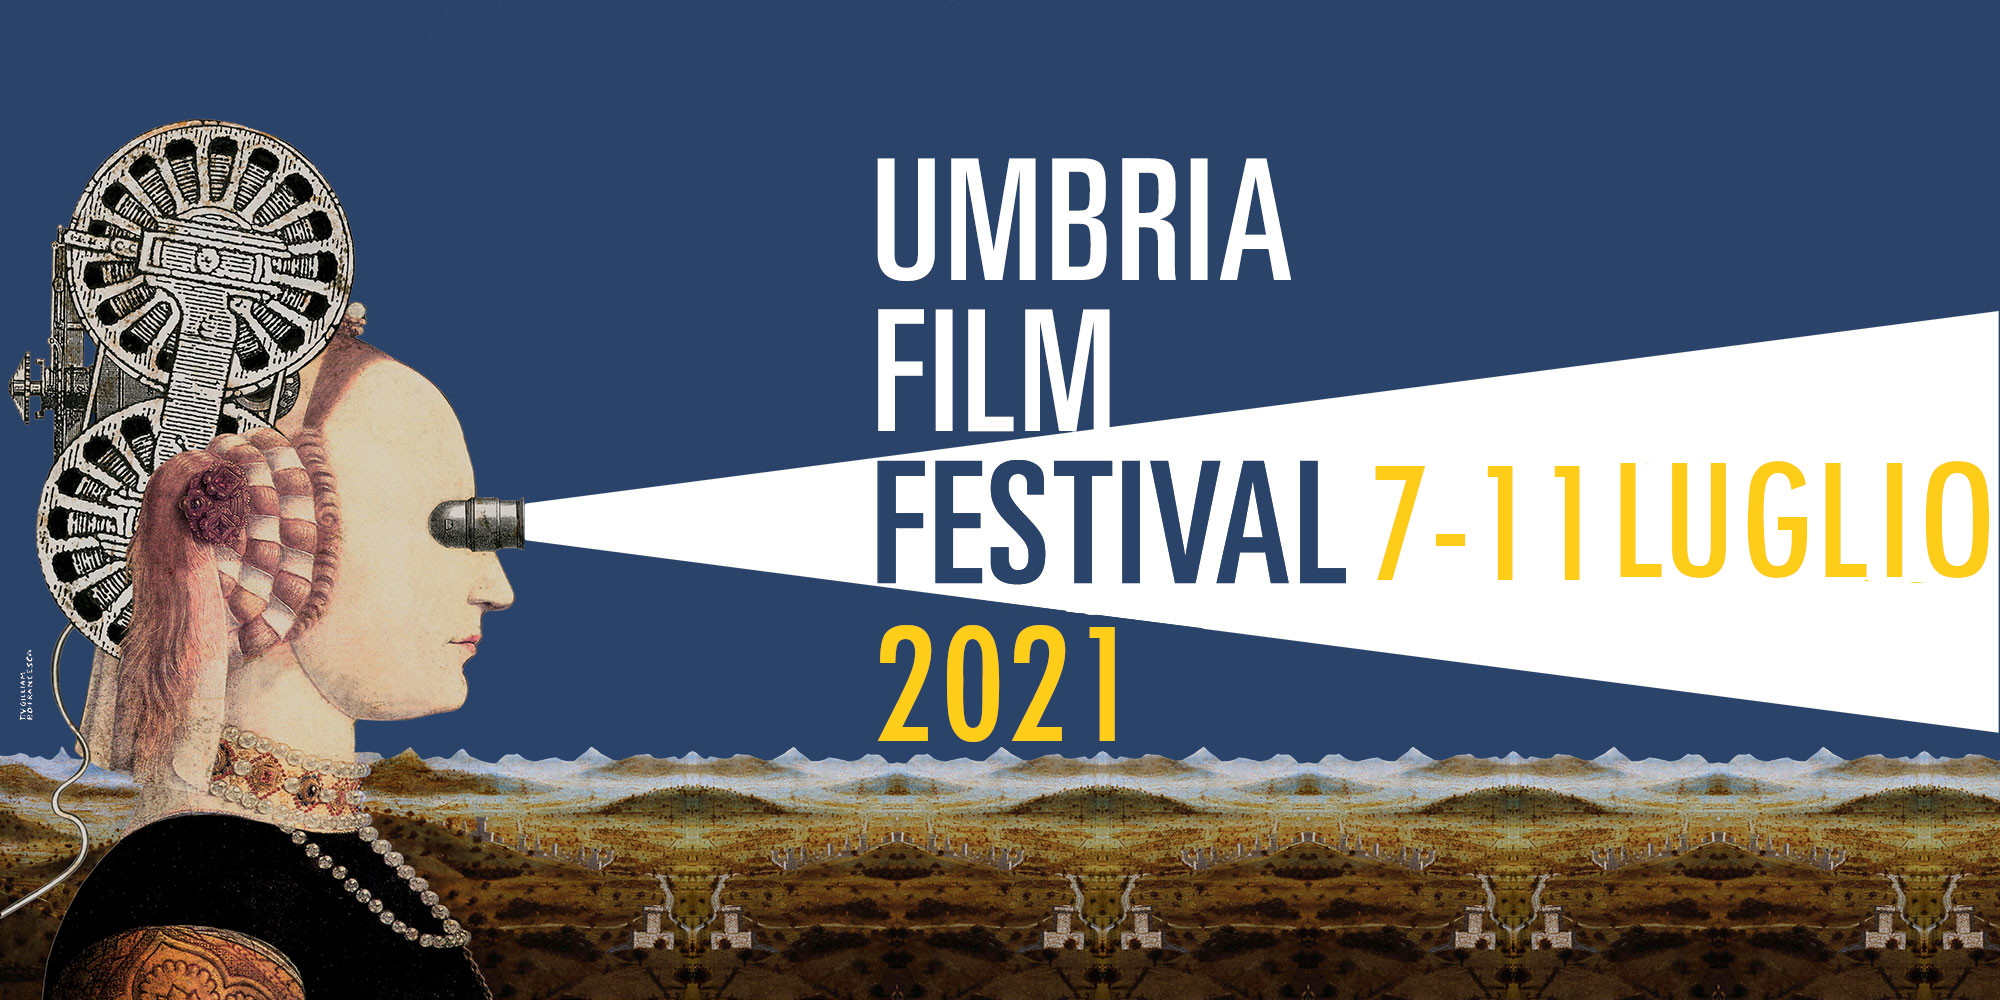 UMBRIA FILM FESTIVAL 2021 locandina